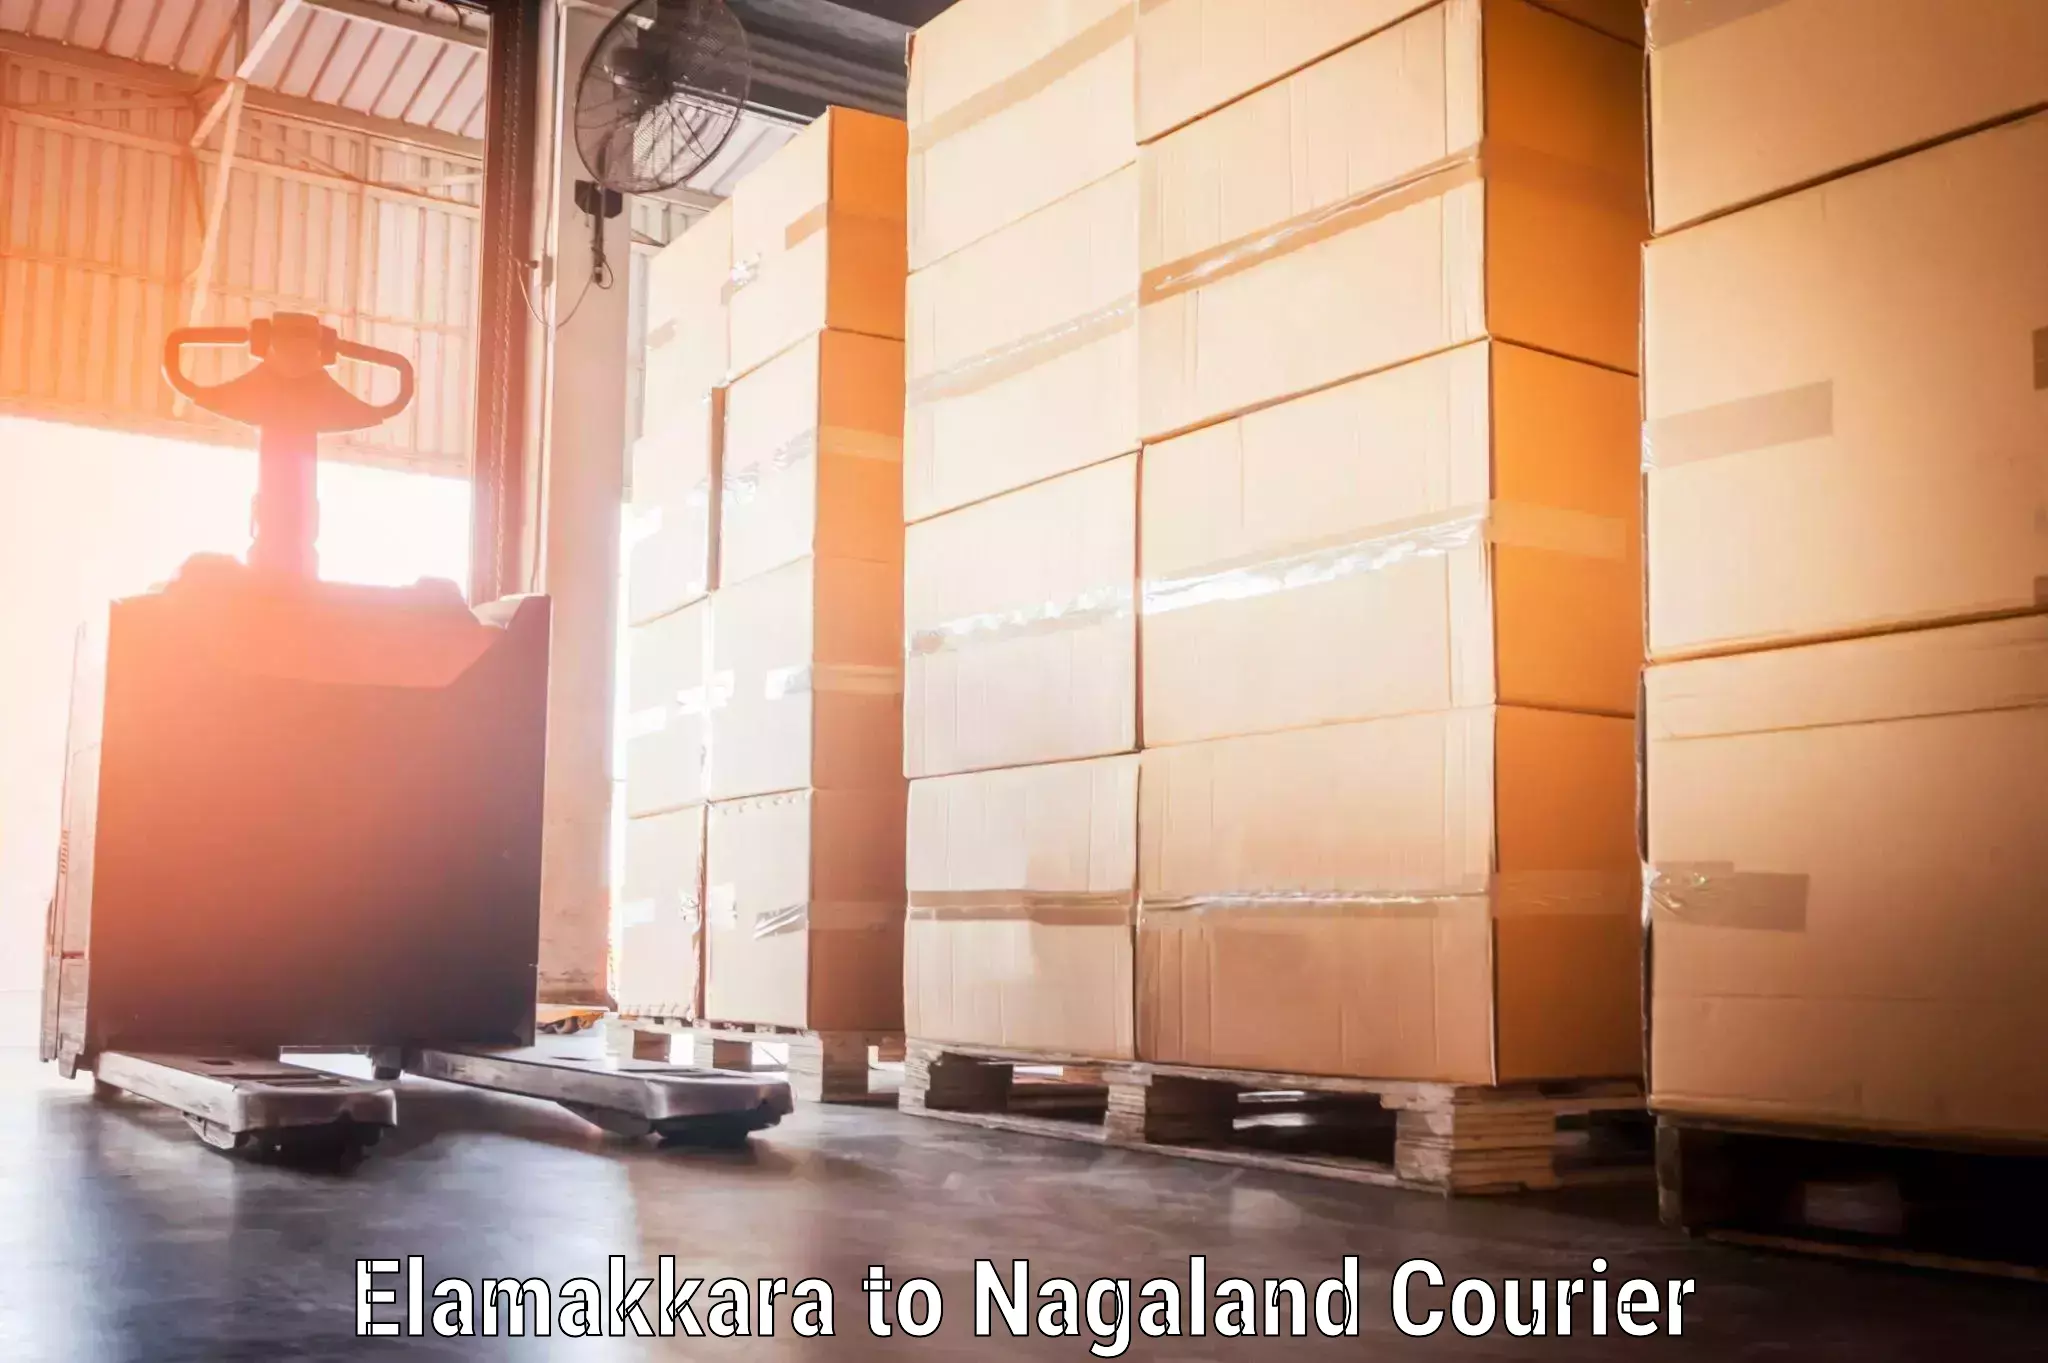 Luggage transit service Elamakkara to NIT Nagaland